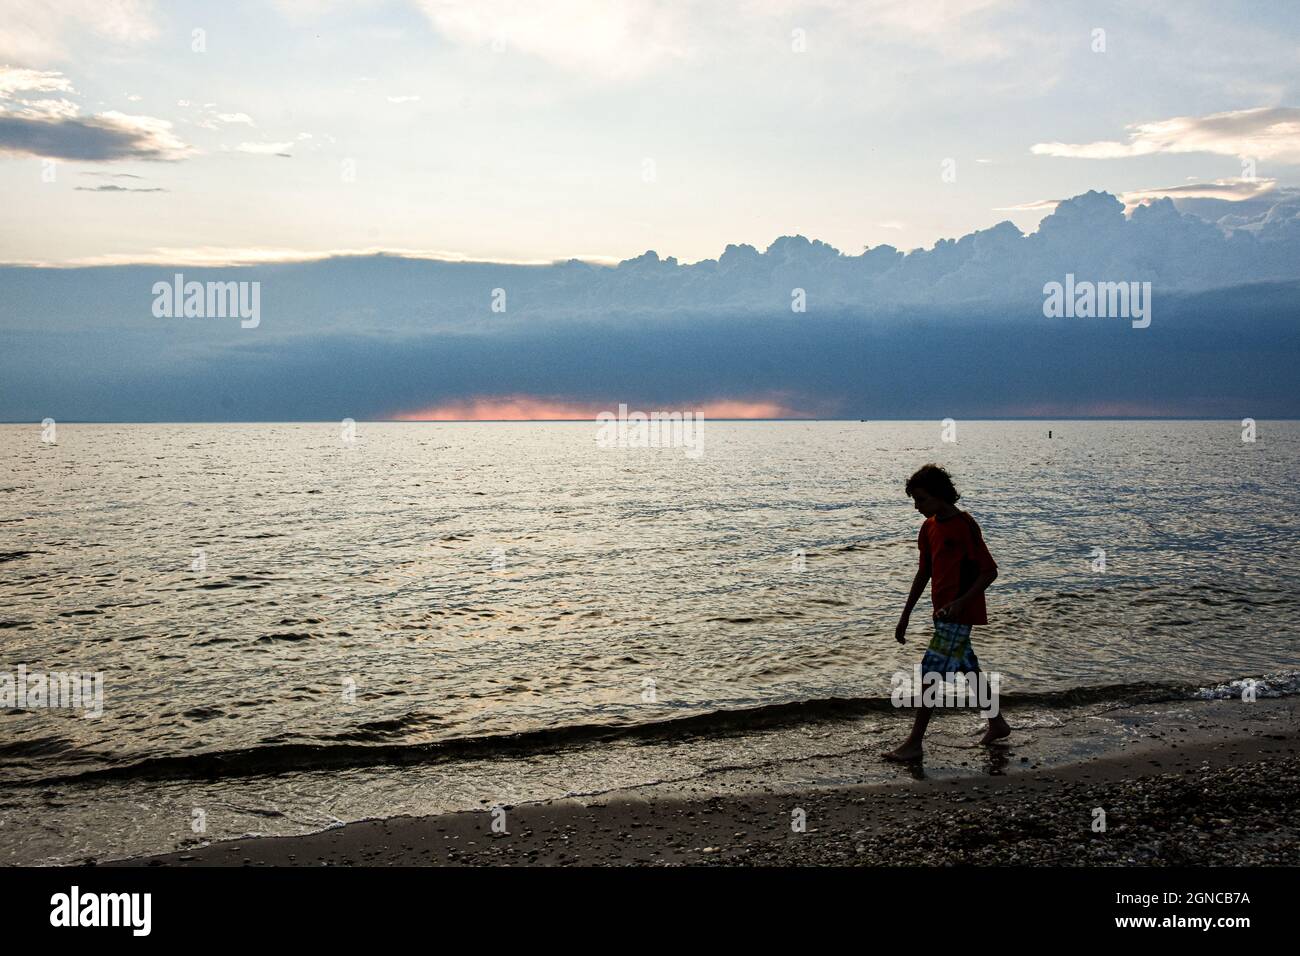 Un niño en silueta camina a lo largo de la playa con nubes de tormenta construyendo en el horizonte distante. Espacio de copia. Foto de stock